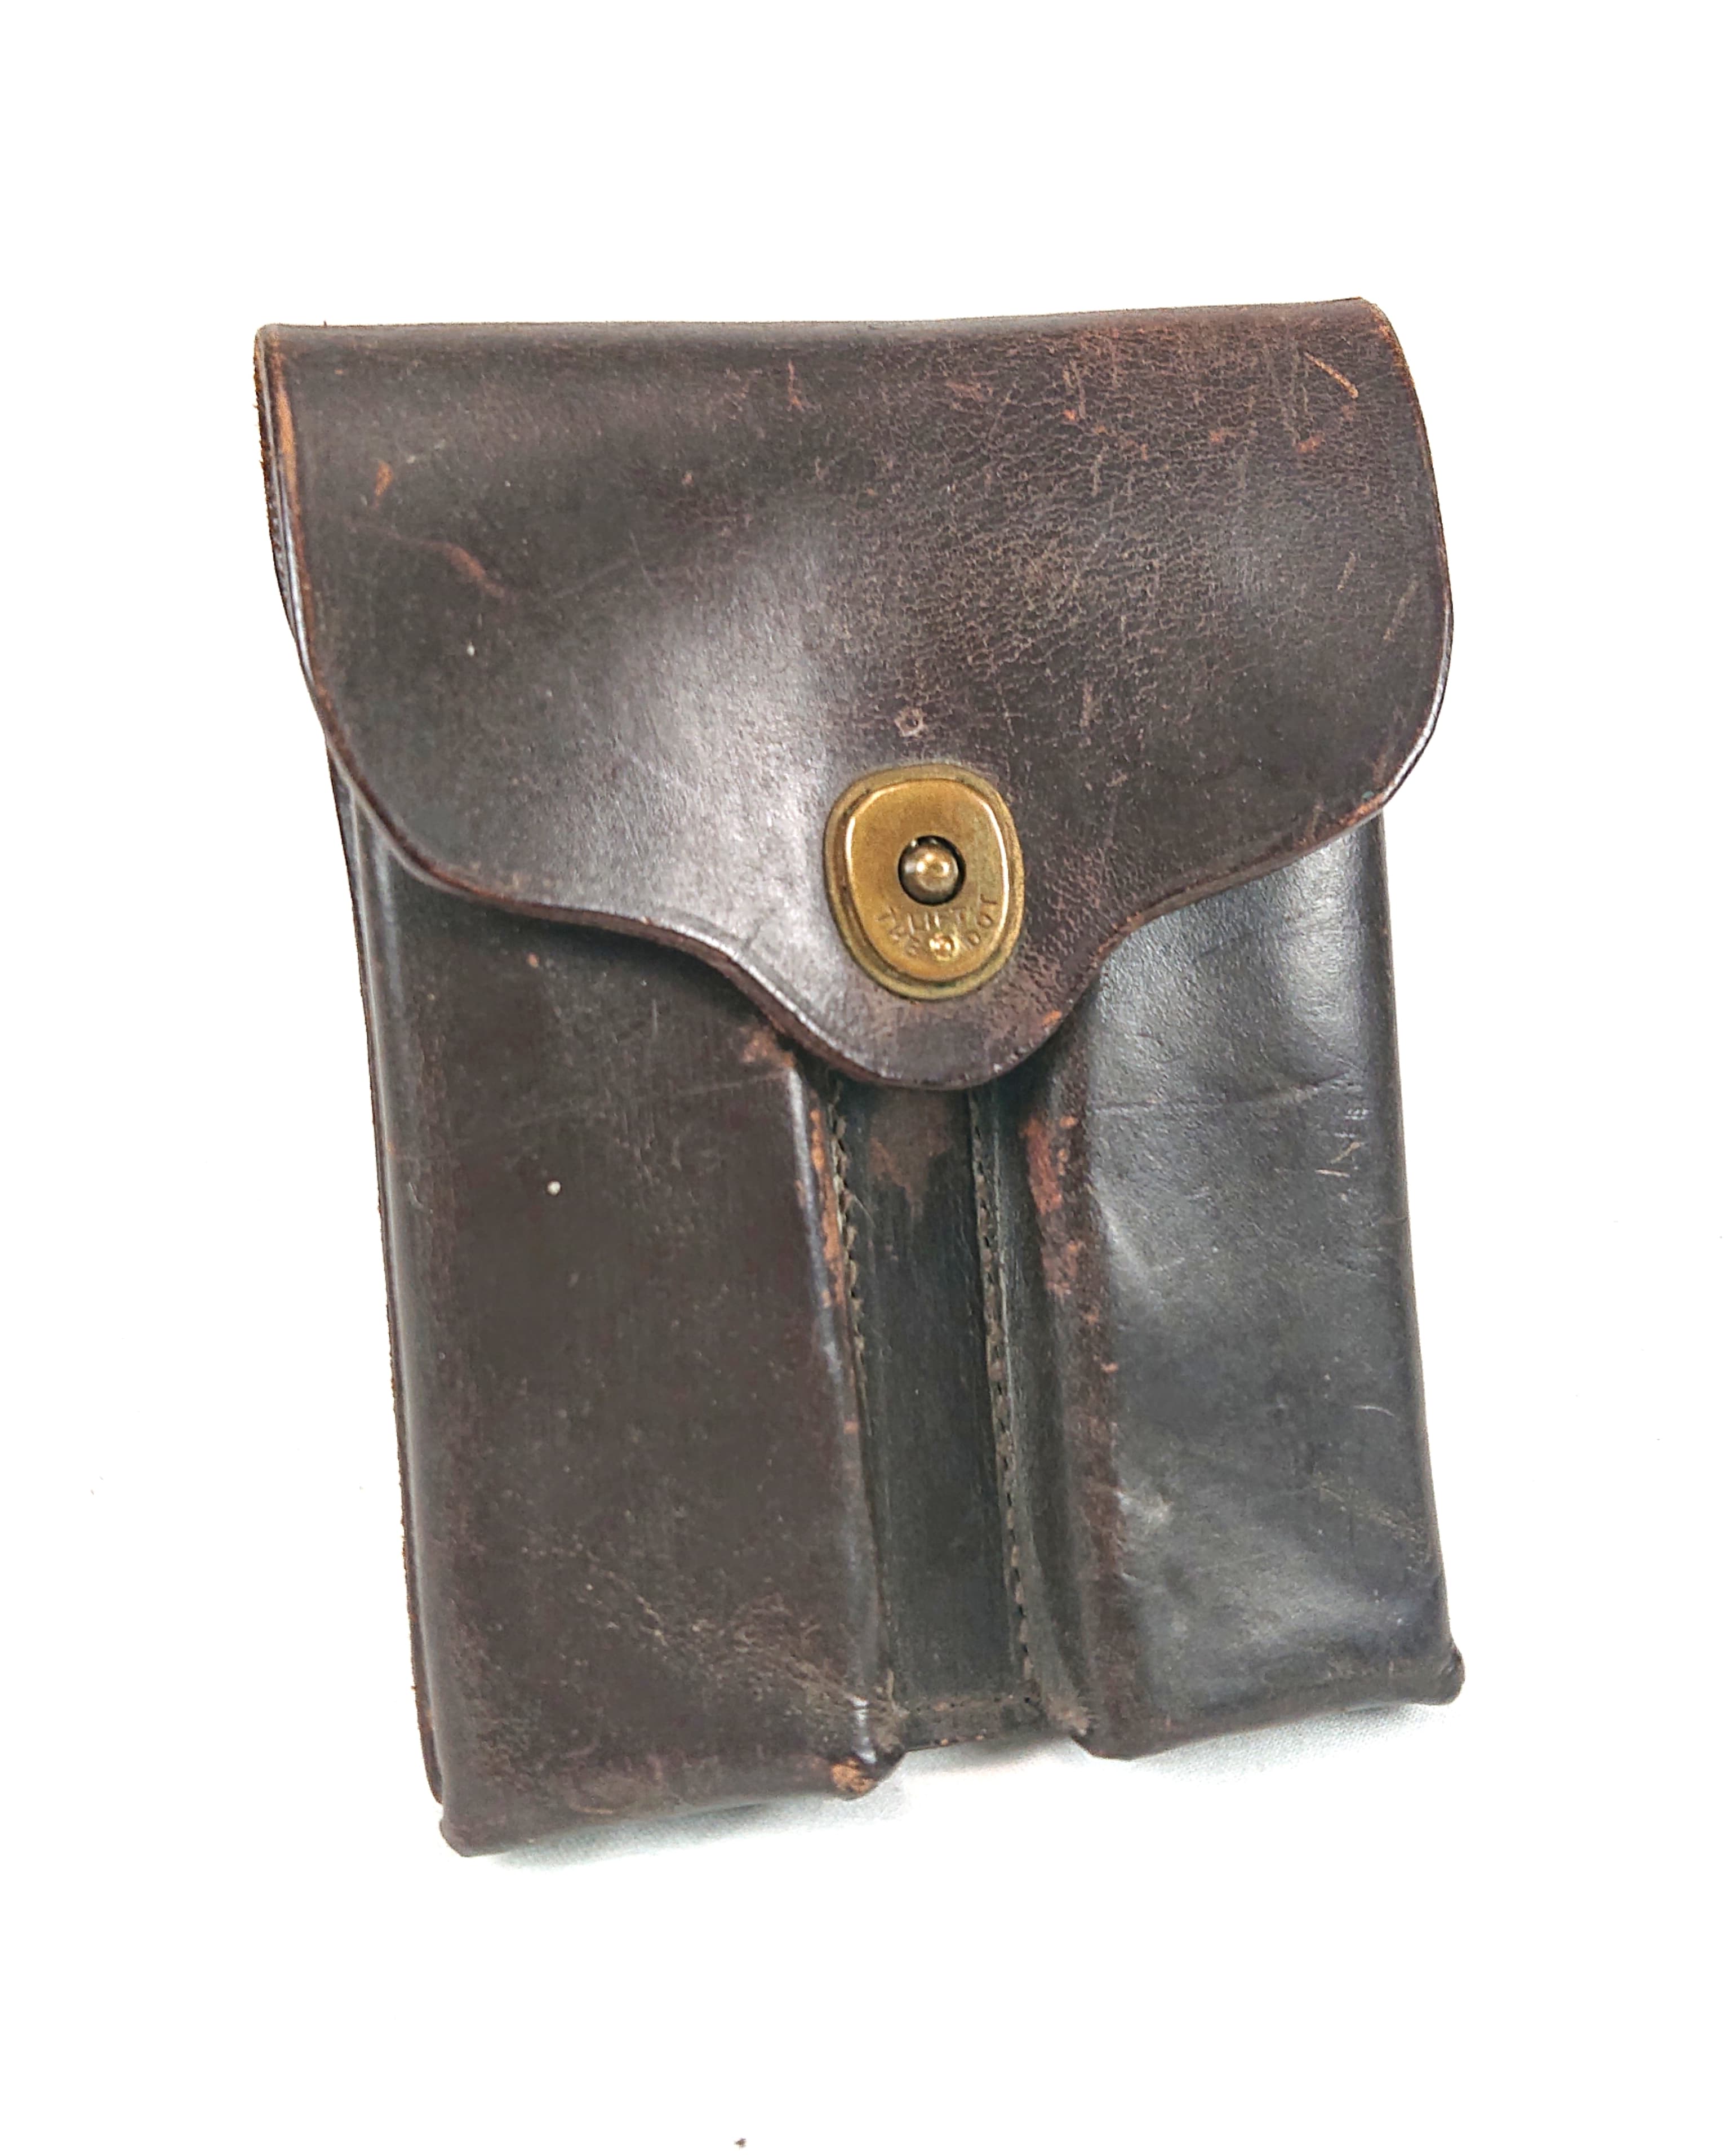 militaria : Porte chargeur colt 1911 en cuir / Colt 1911 leather magazine pouch